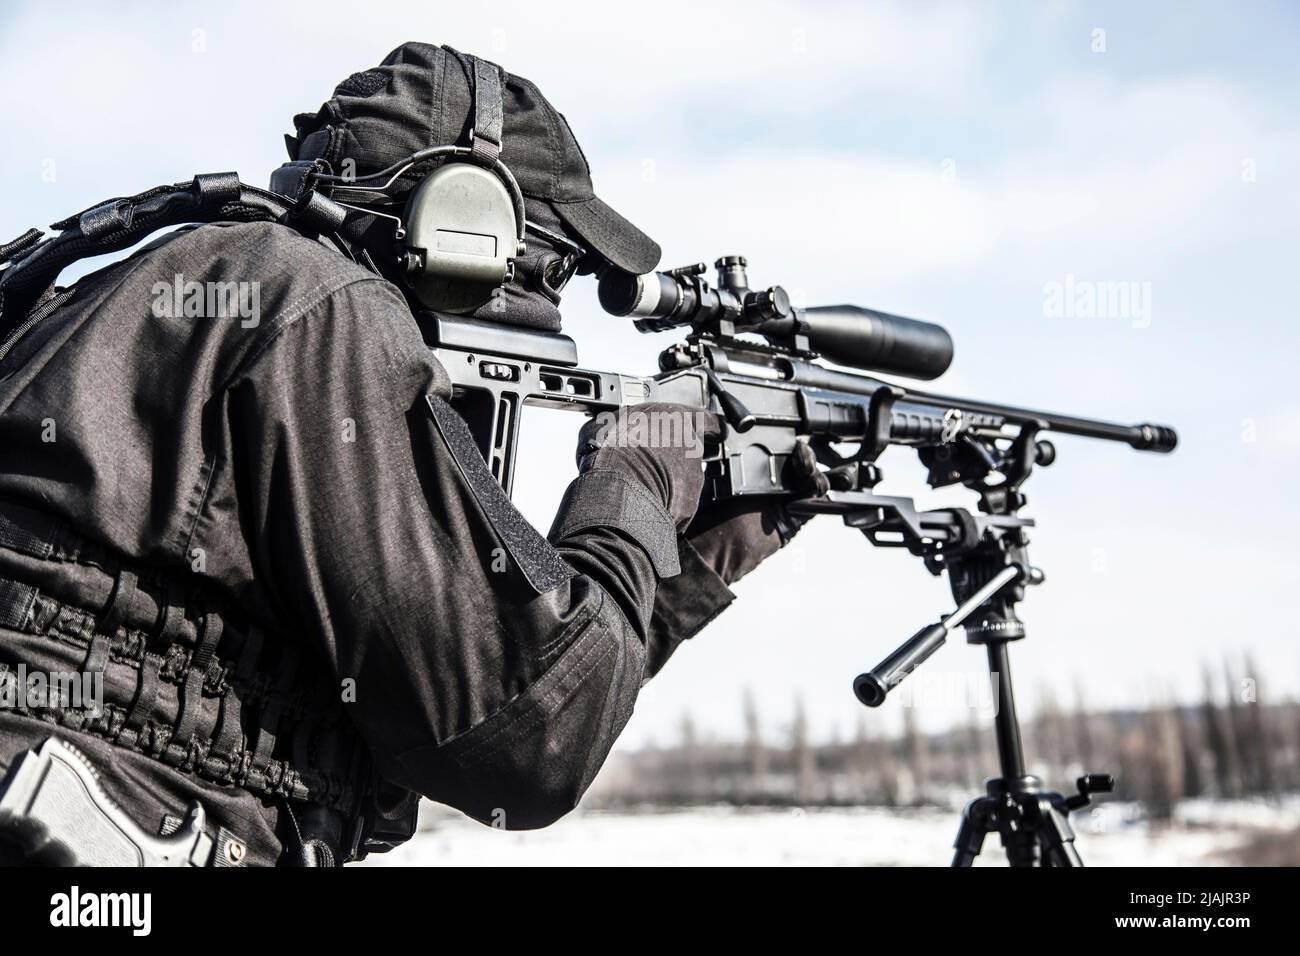 Scharfschütze mit teleskopischer optischer Sicht auf Scharfschützengewehr, das auf einem Stativ montiert ist. Stockfoto